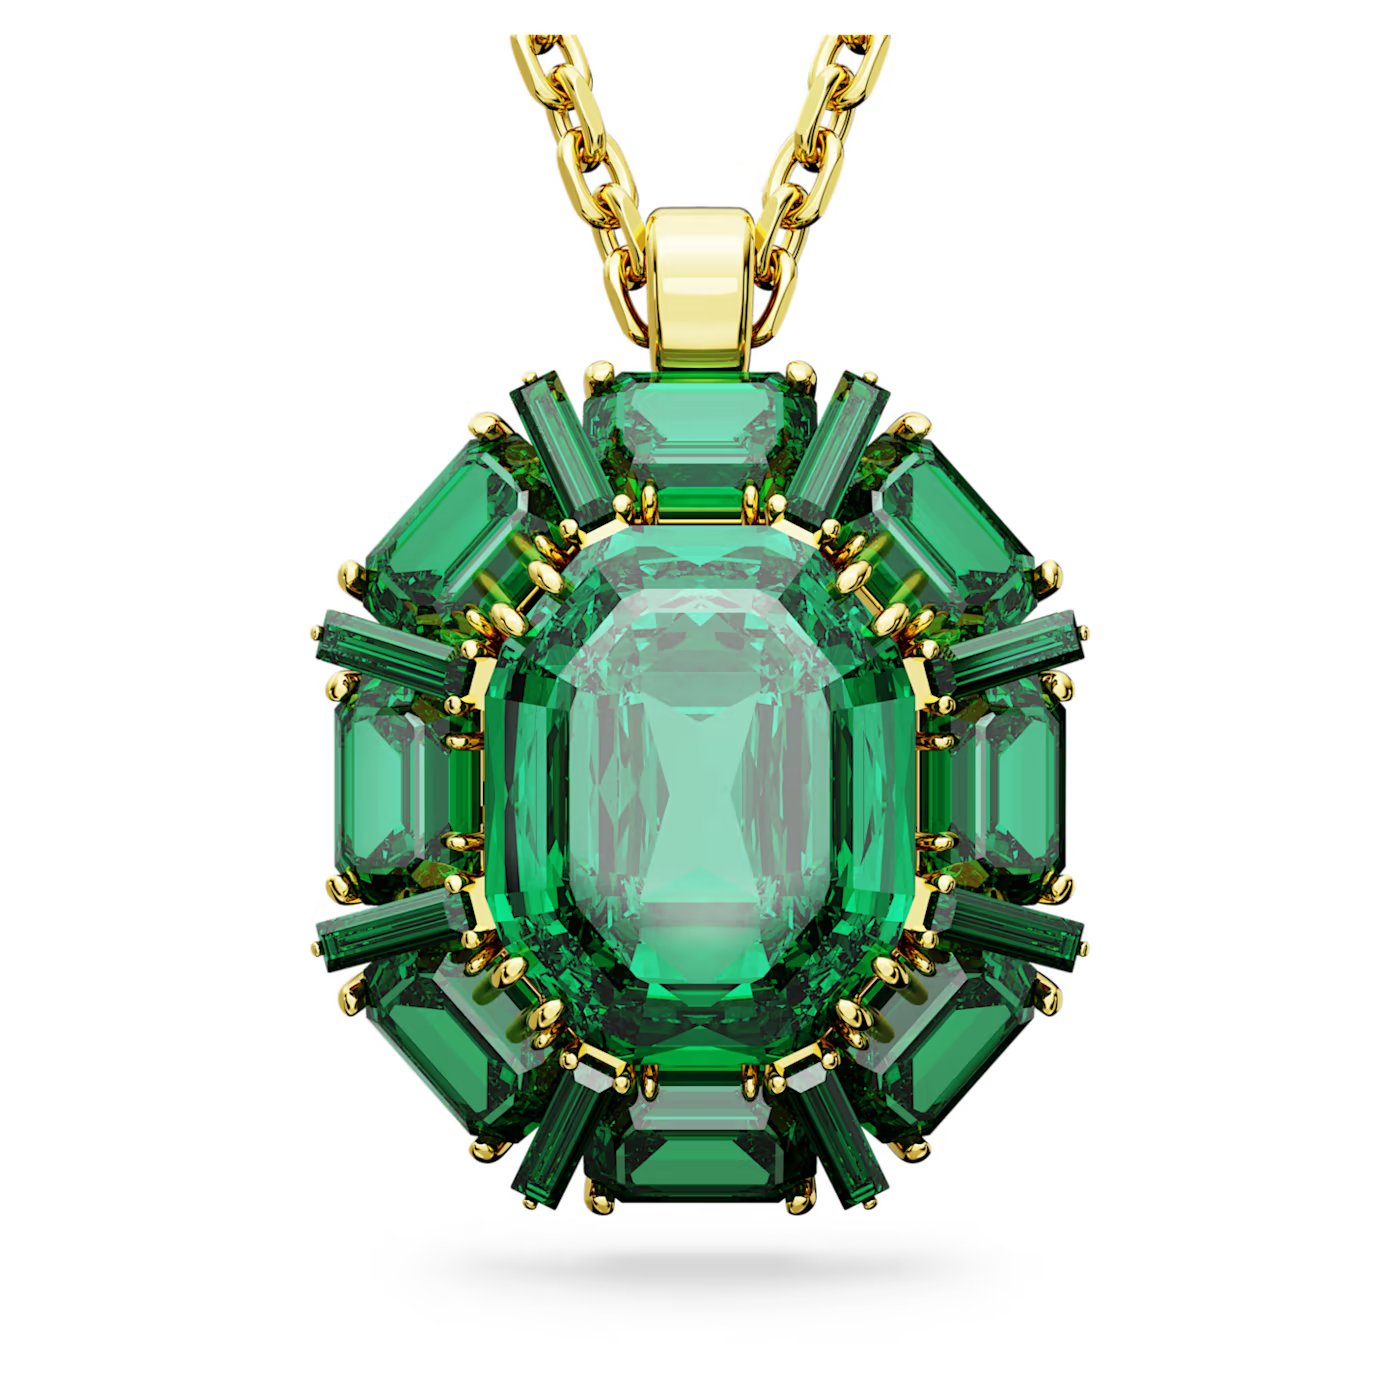 64259b069d3a3_millenia-pendant--mixed-cuts--green--gold-tone-plated-swarovski-5650797.jpg